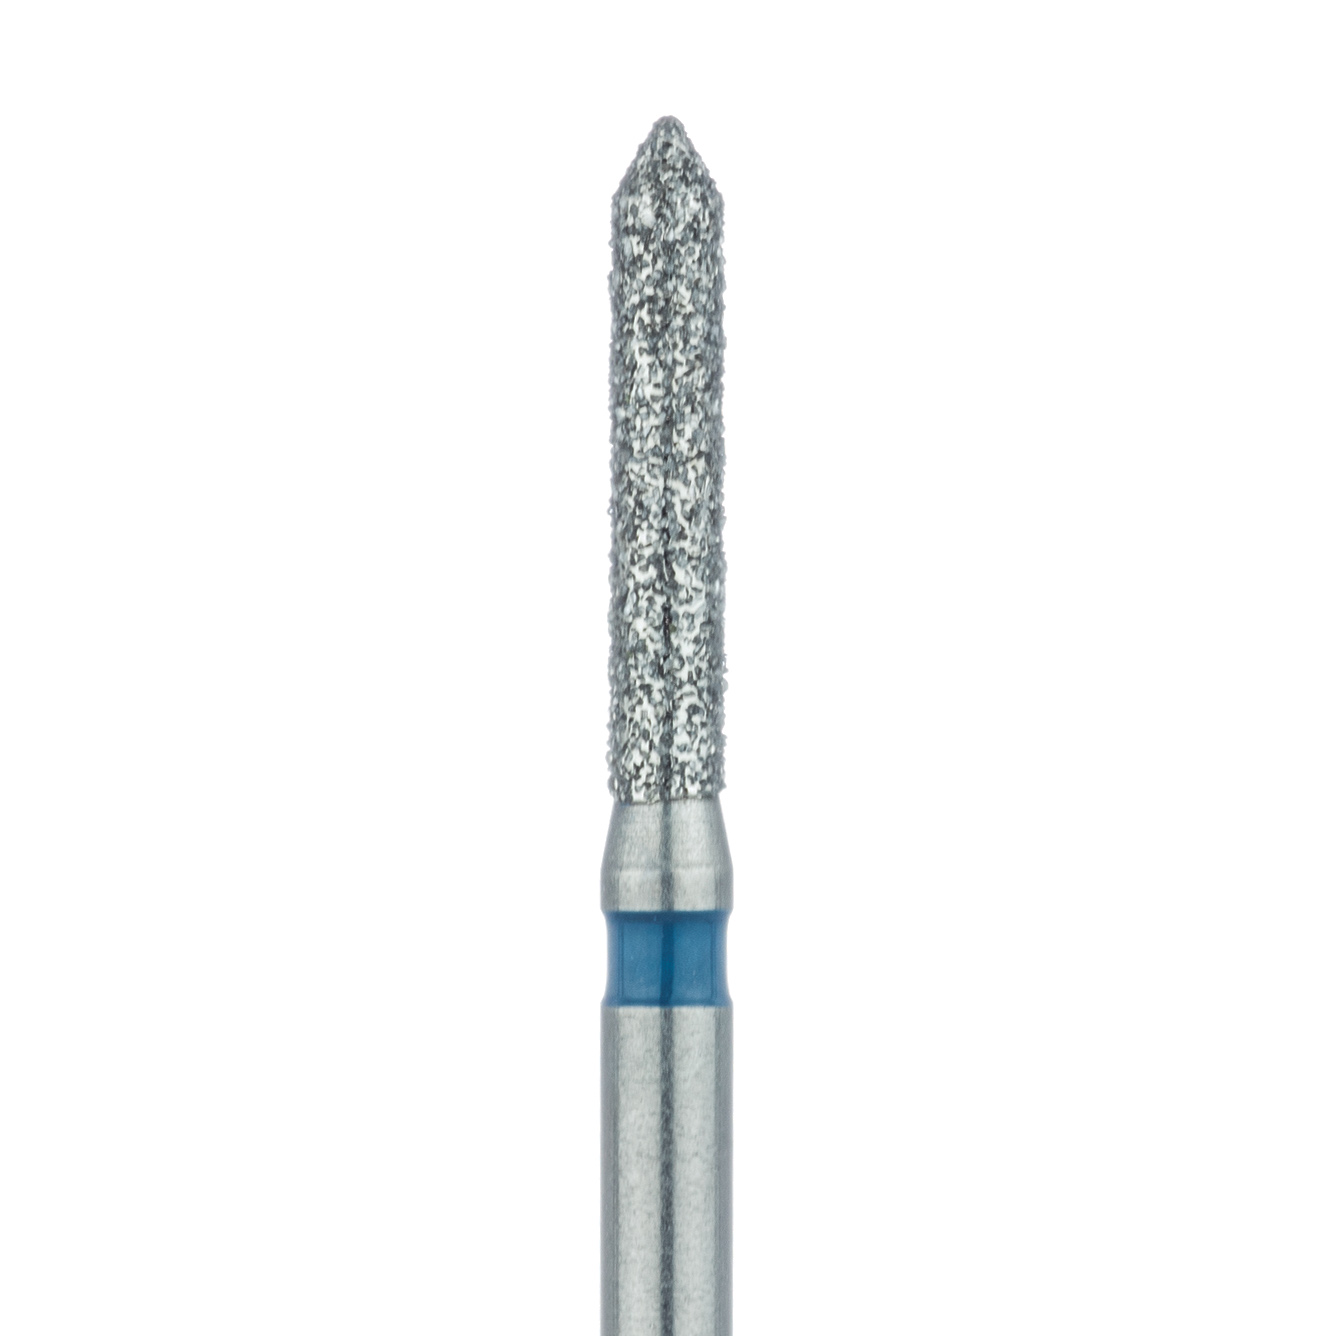 885-014-FG Pointed Tip Cylinder Diamond Bur, 1.4mm Ø, Medium, FG